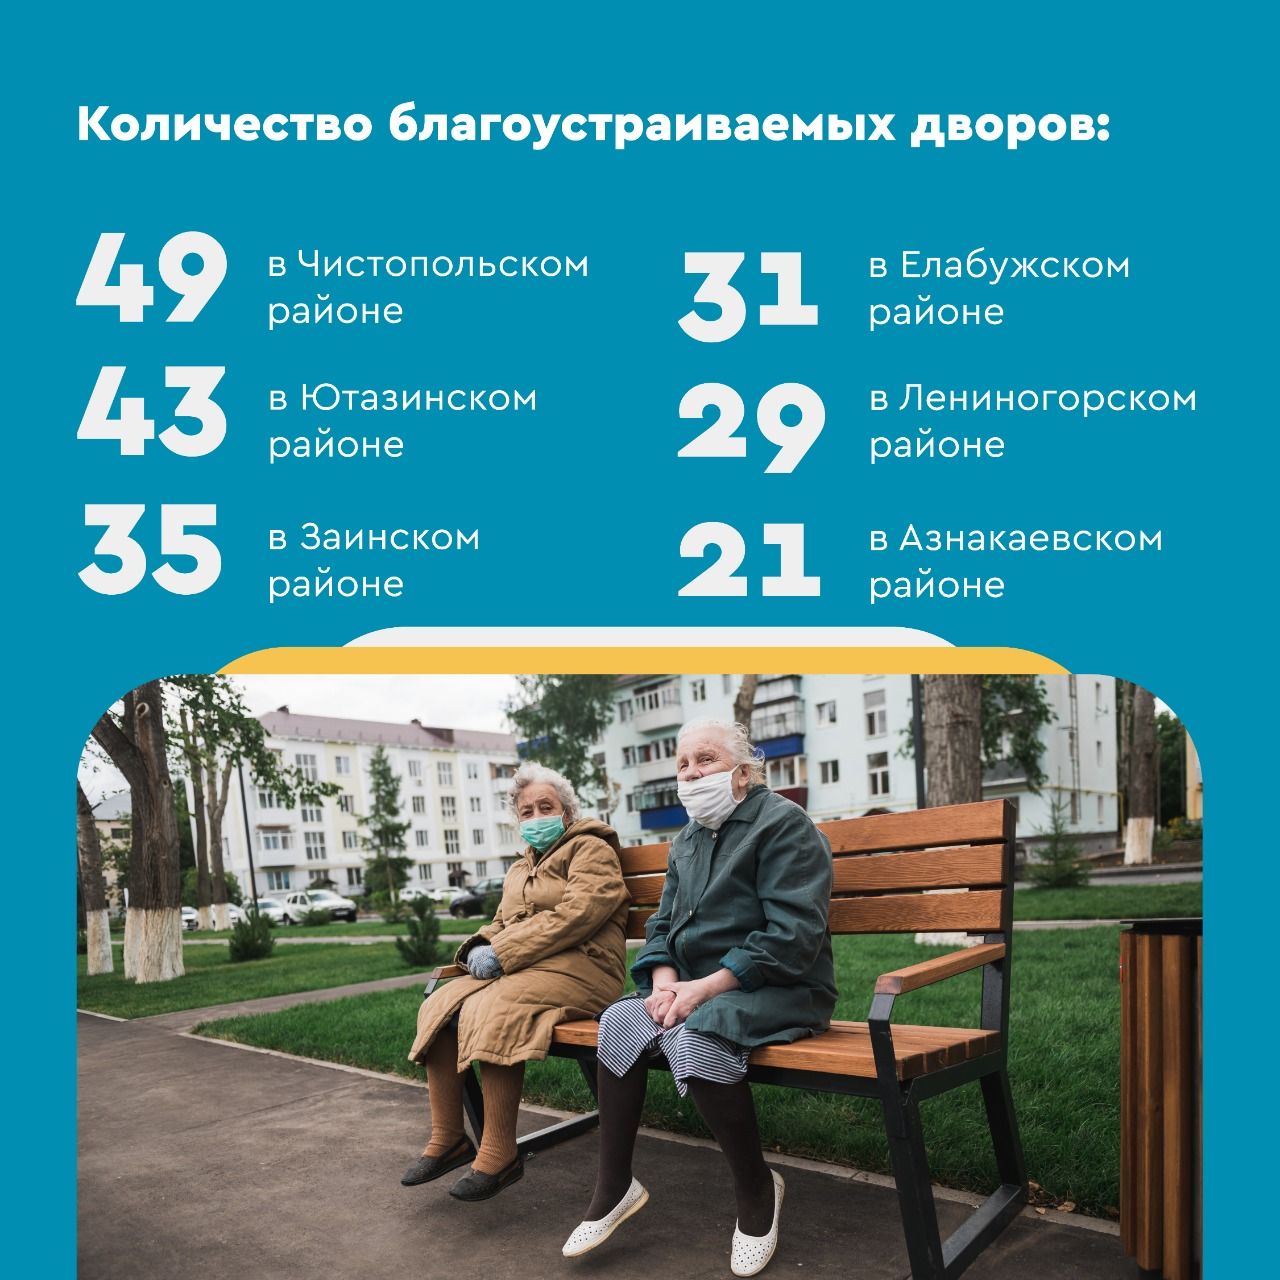 Более тысячи дворов благоустроят в Татарстане в 2021 году